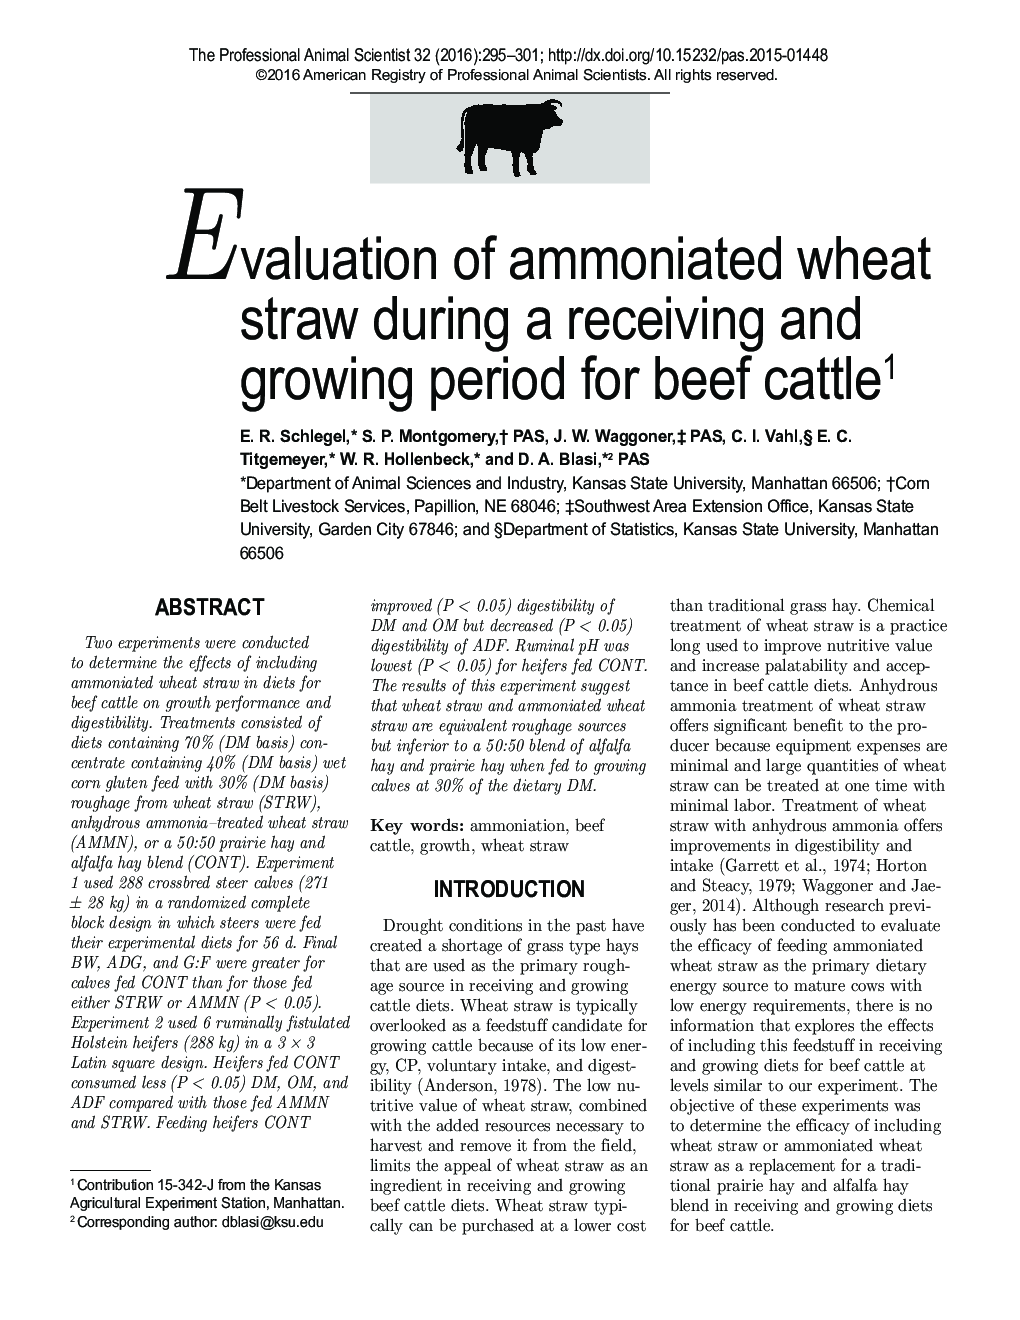 ارزیابی کاه گندم آمونیاک در طی دوره دریافت و رشد گاوهای گوشتی 1 